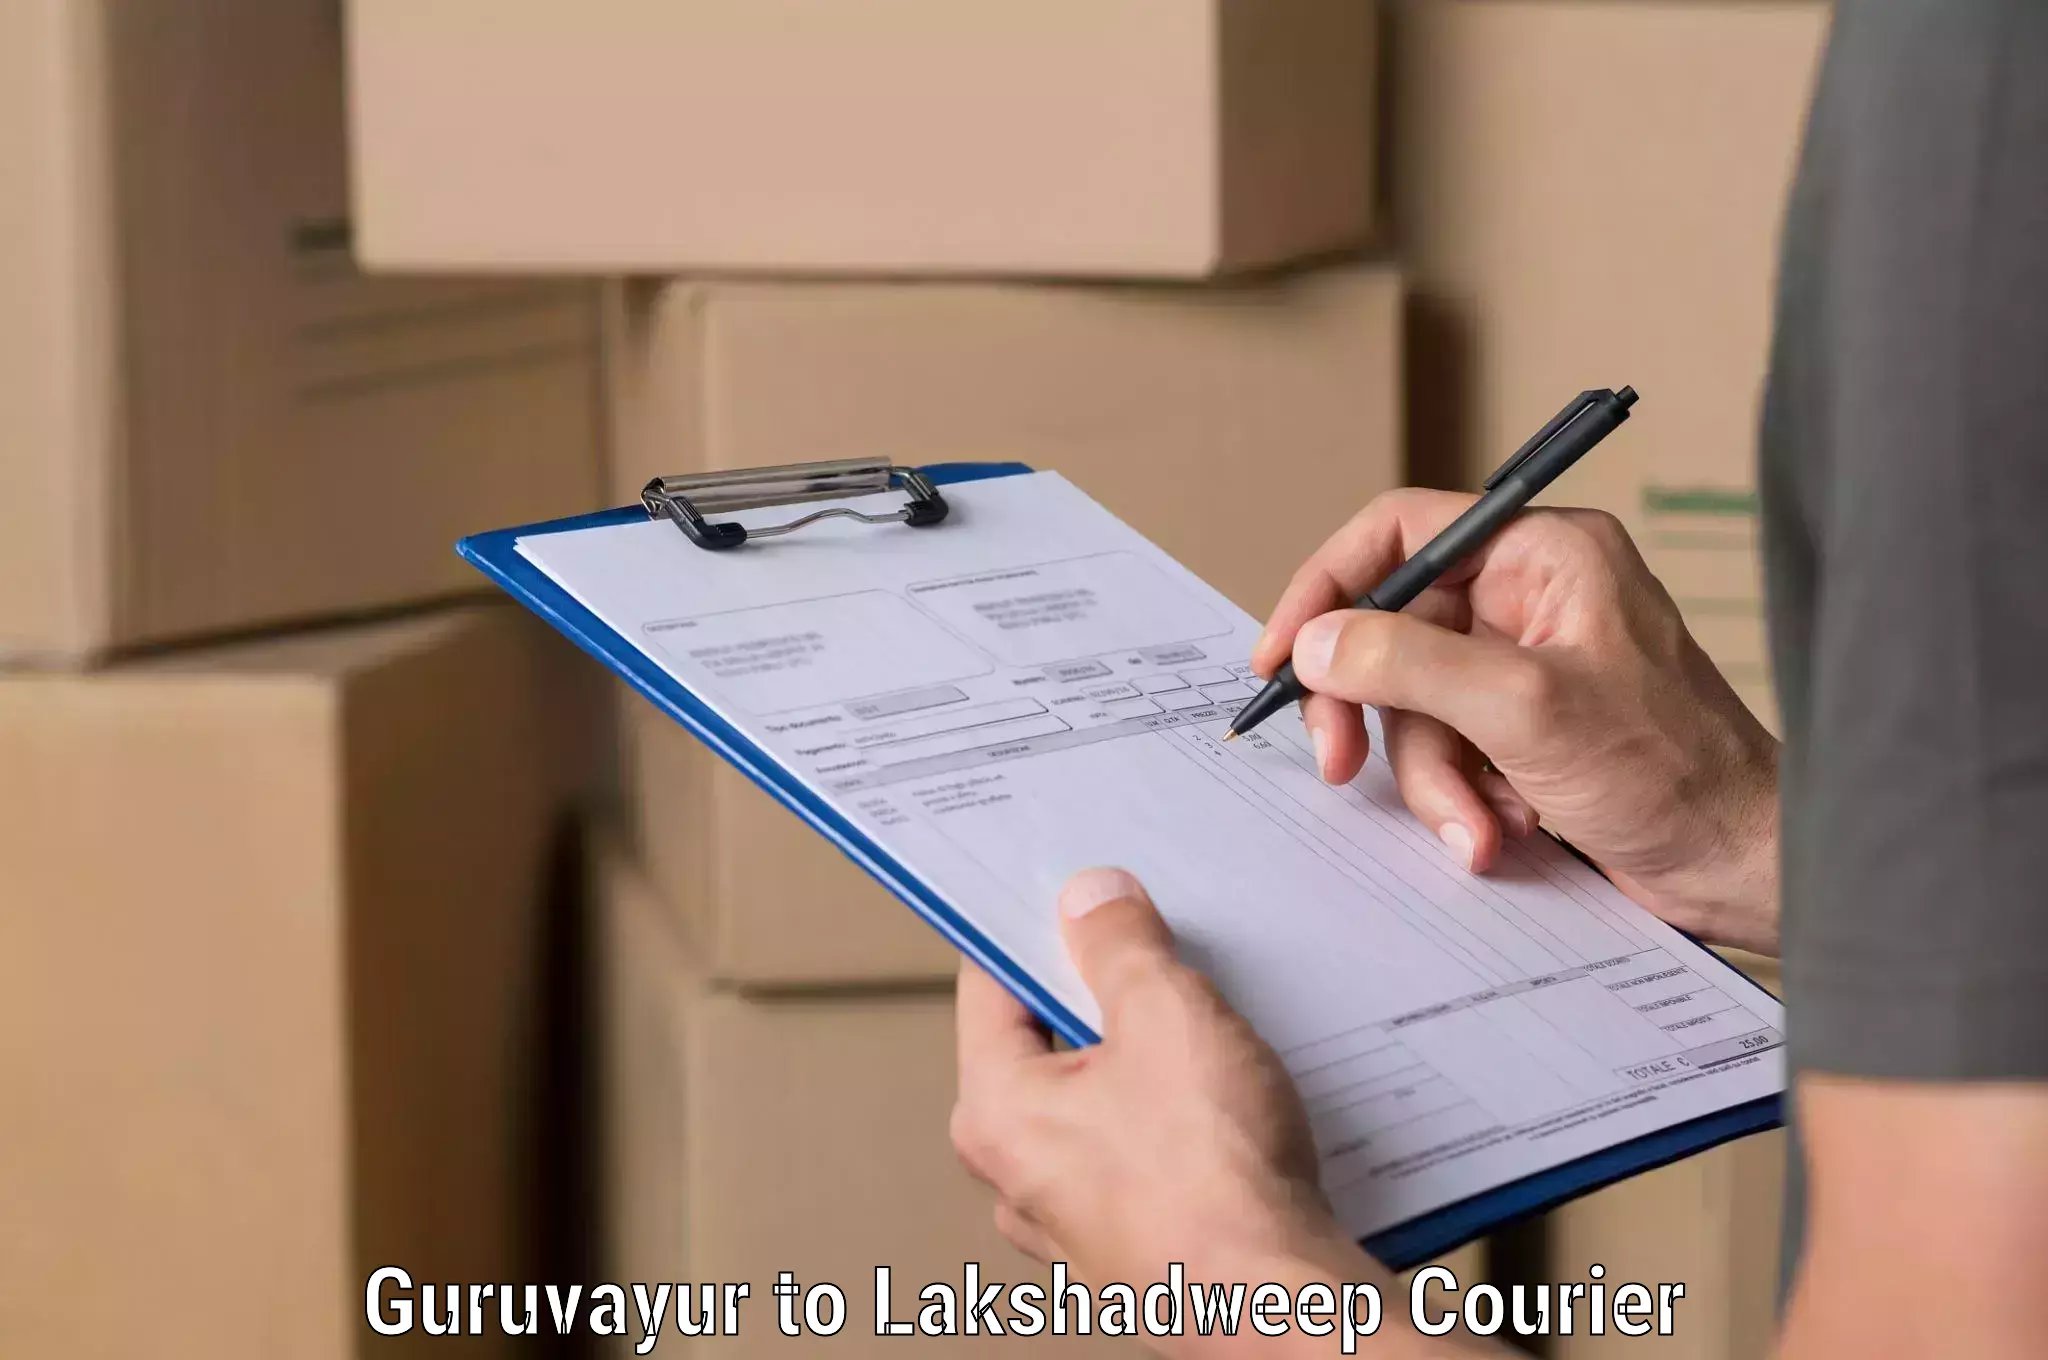 High-priority parcel service Guruvayur to Lakshadweep